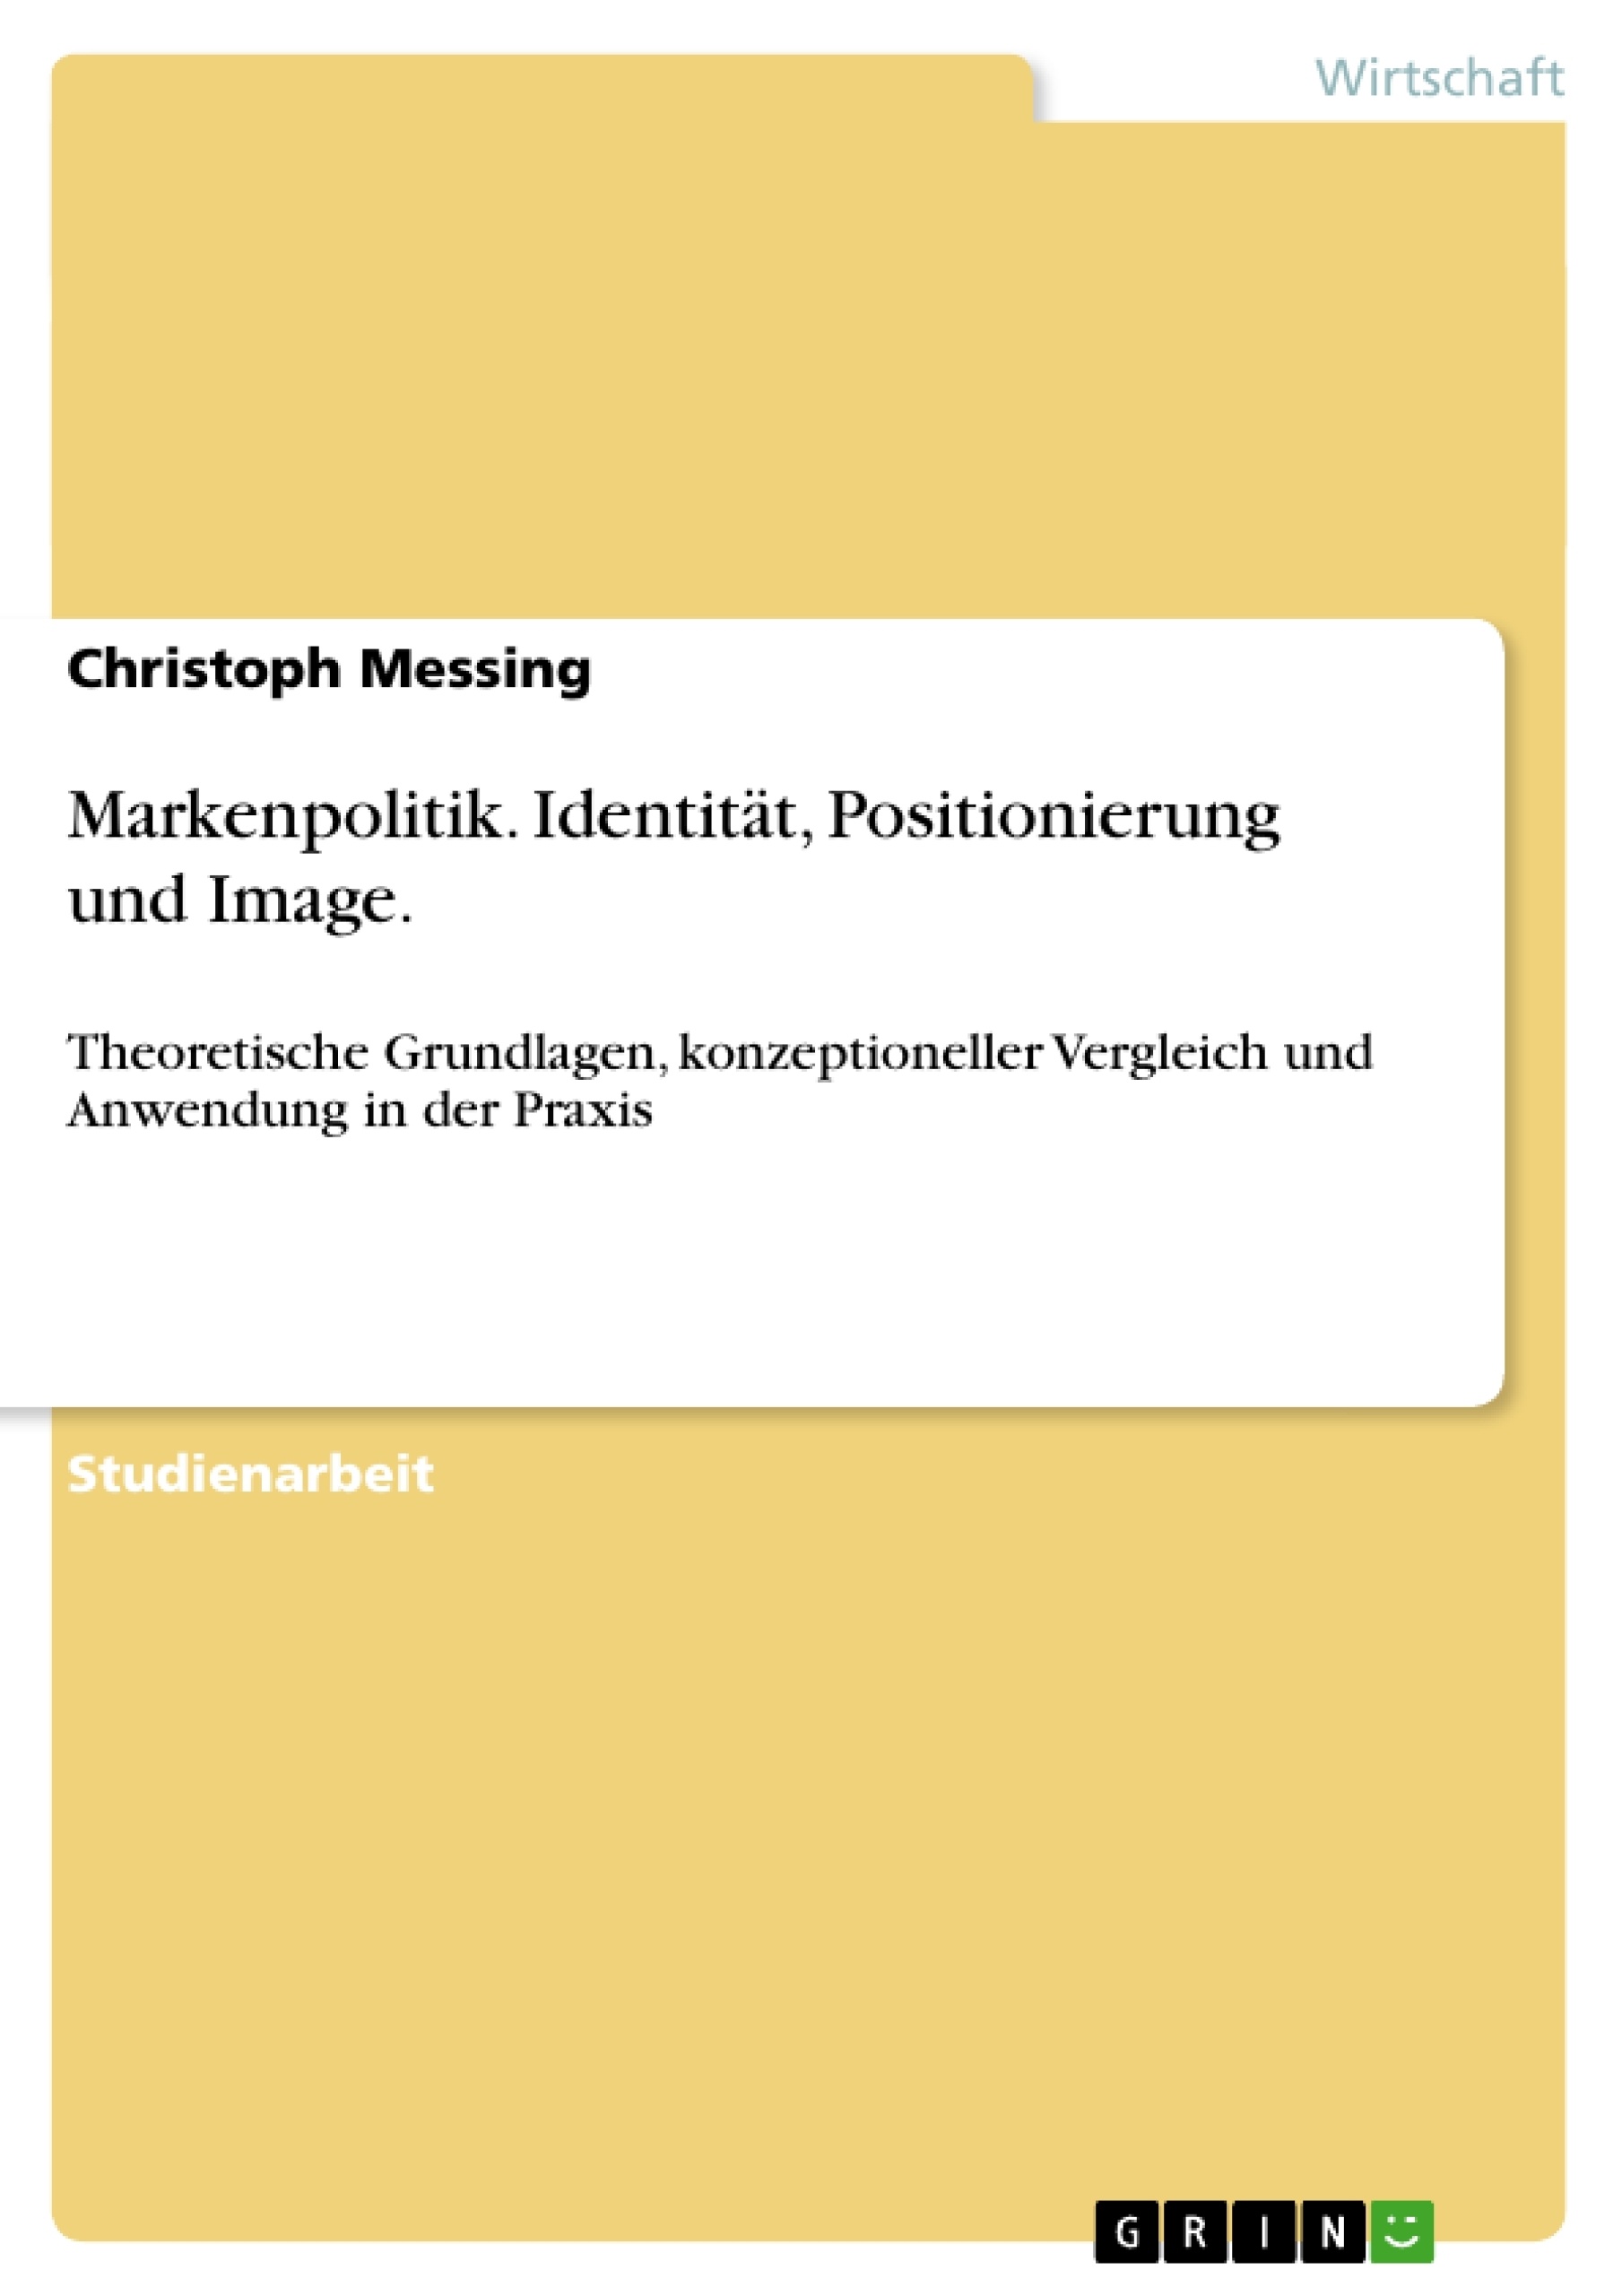 Título: Markenpolitik. Identität, Positionierung und Image.